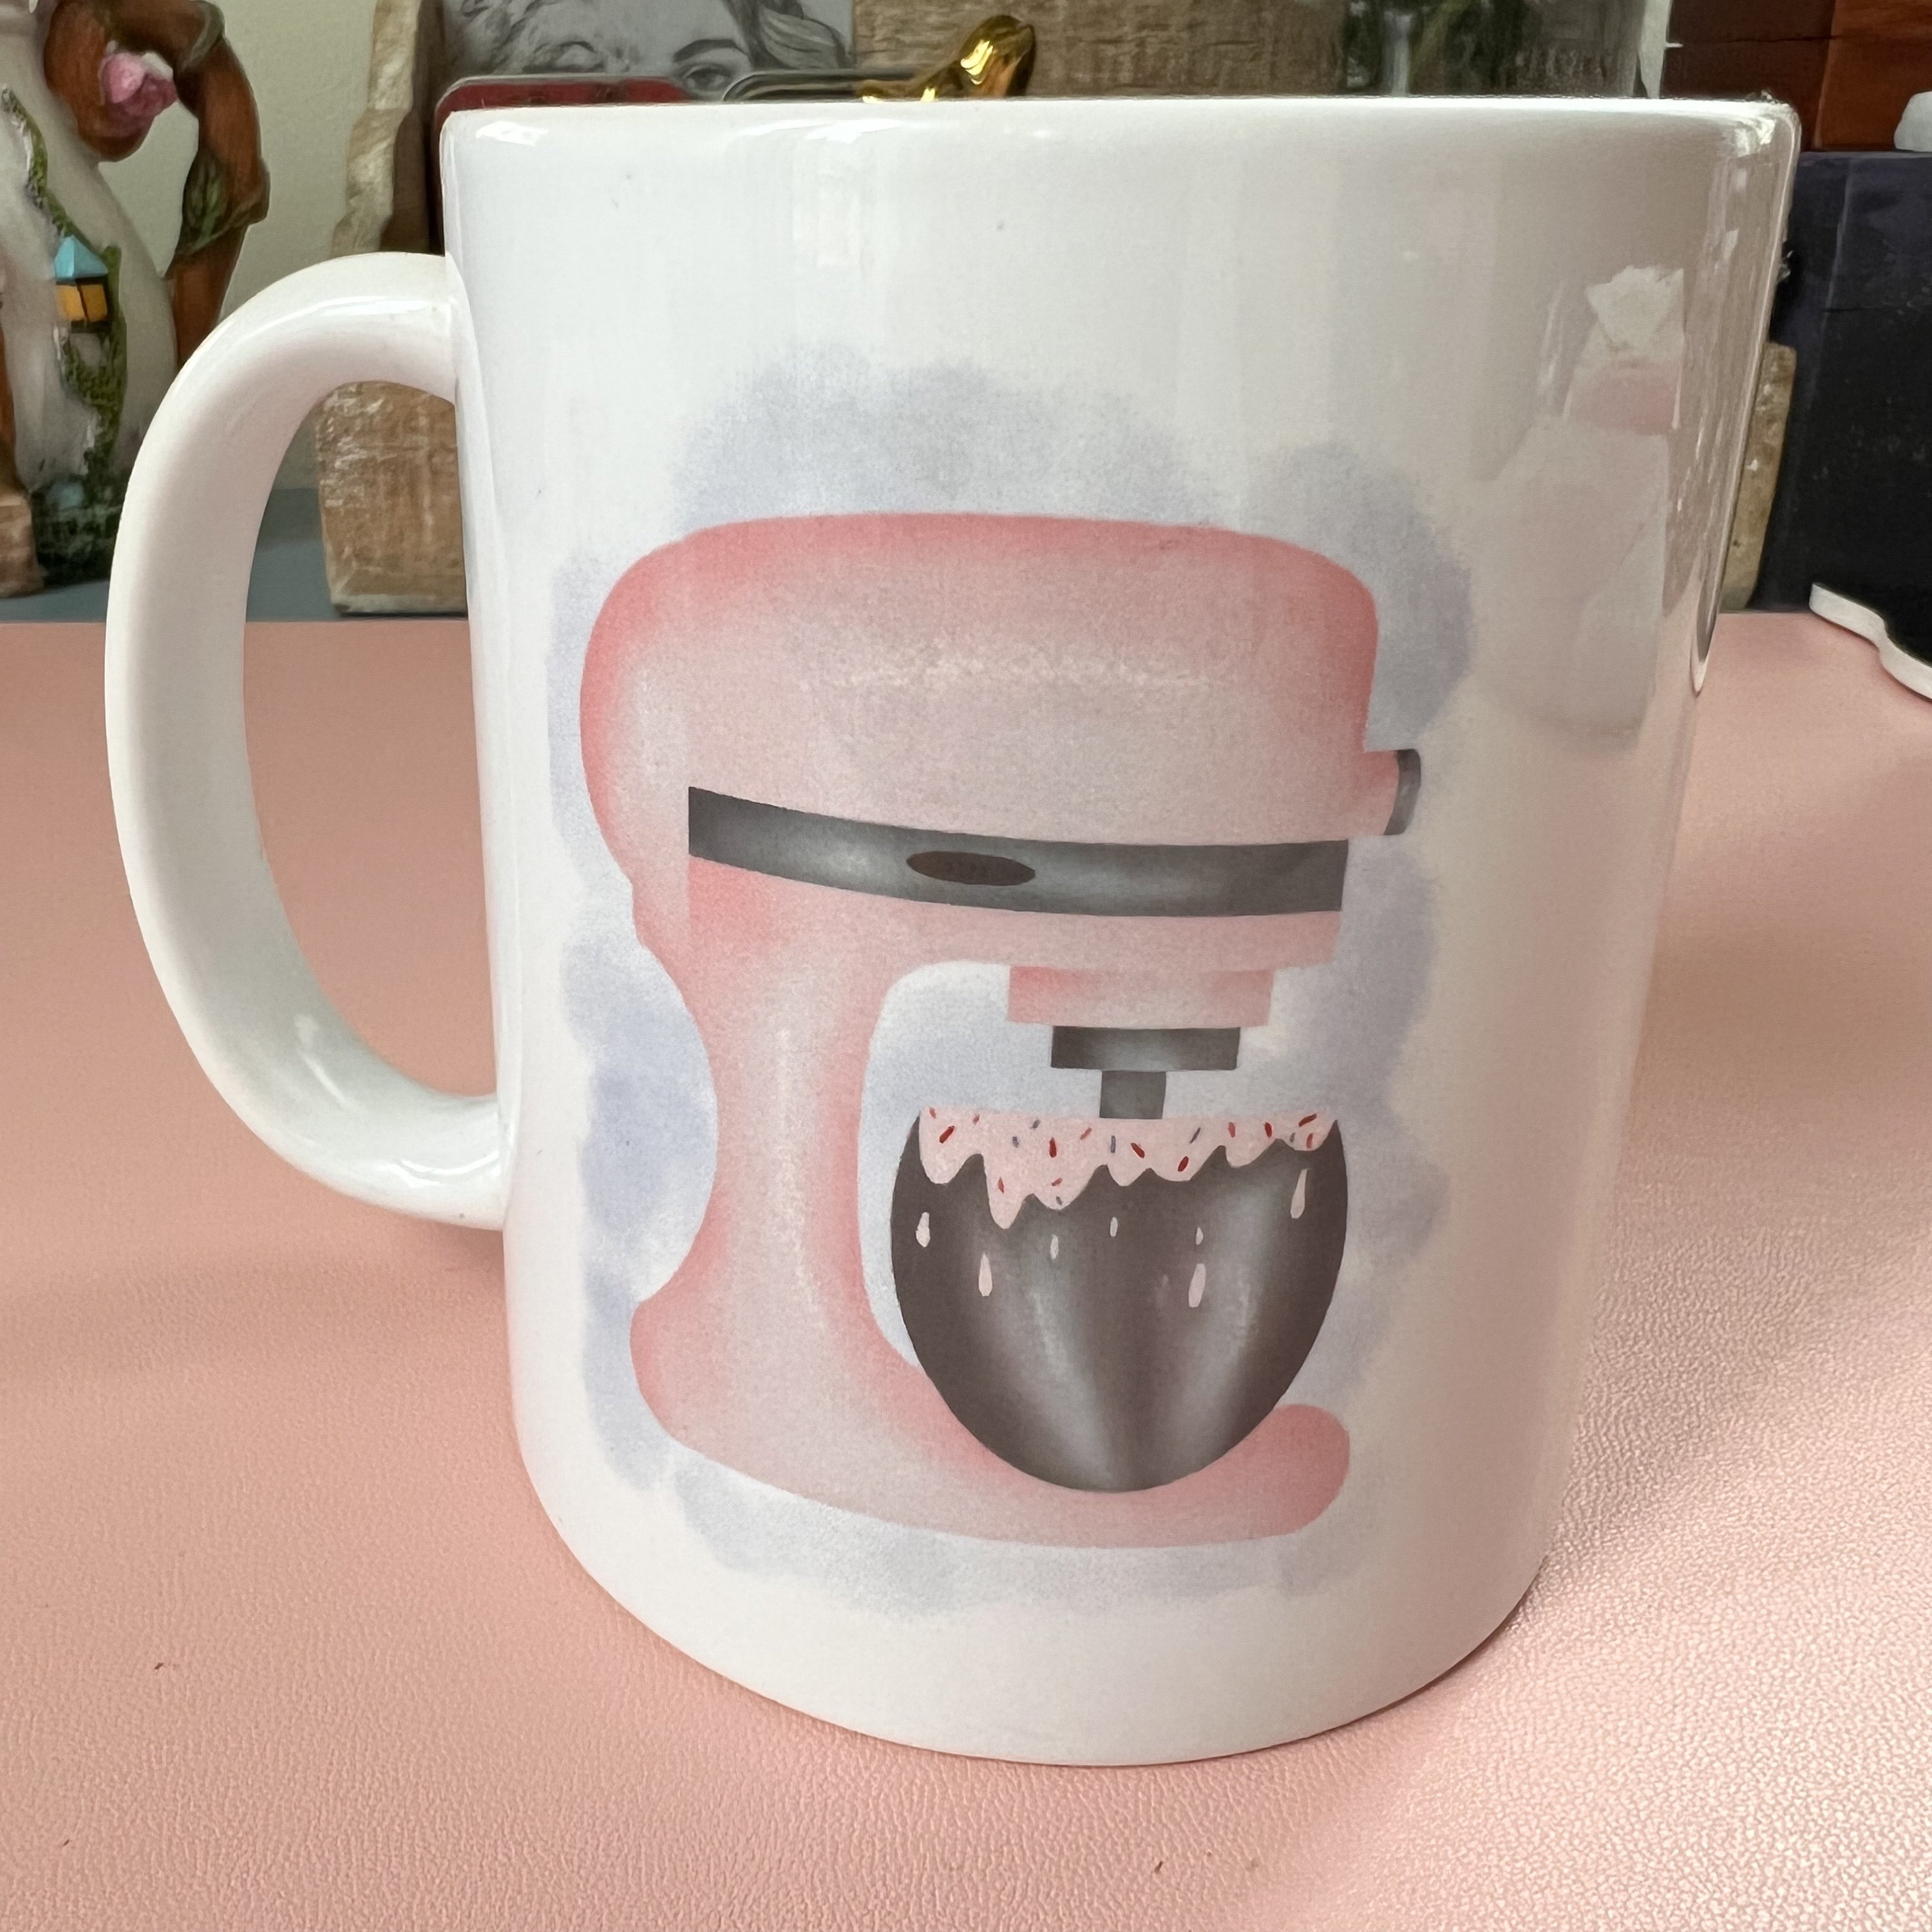 Pink Stand Mixer Mug, Baker Mug, Coffee Cup, 11oz 